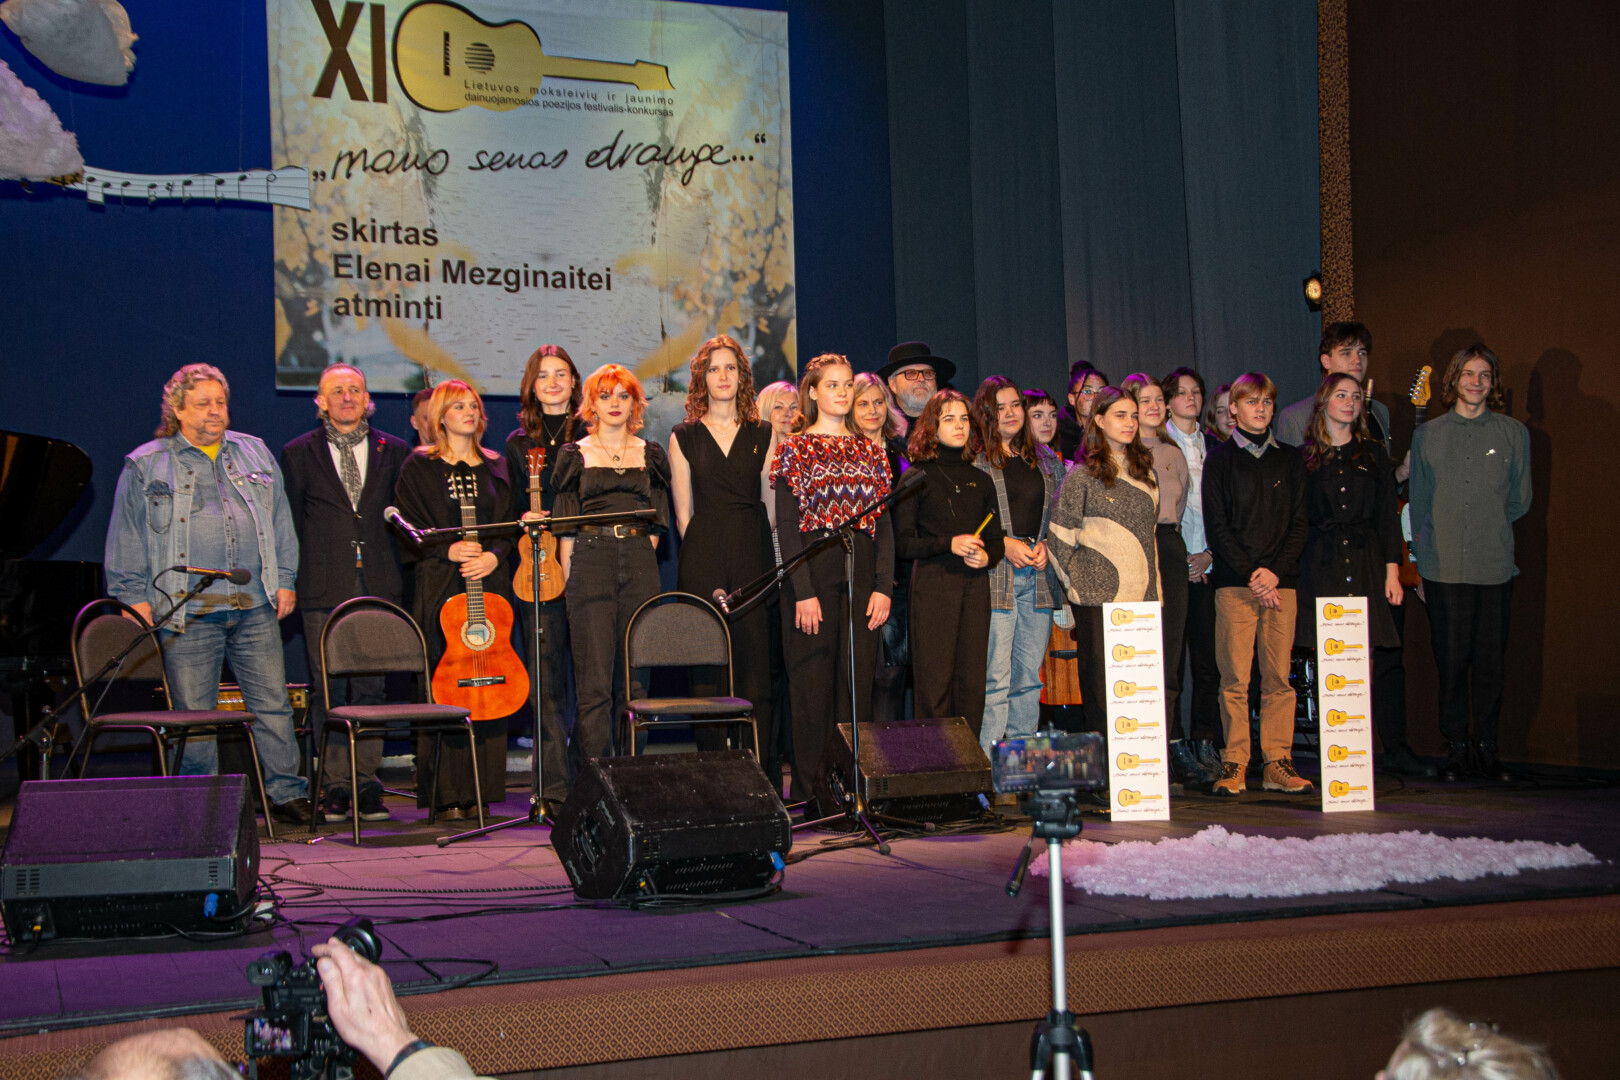 Panevėžyje įvyko XI Lietuvos moksleivių dainuojamosios poezijos festivalis-konkursas „Mano senas drauge…“.